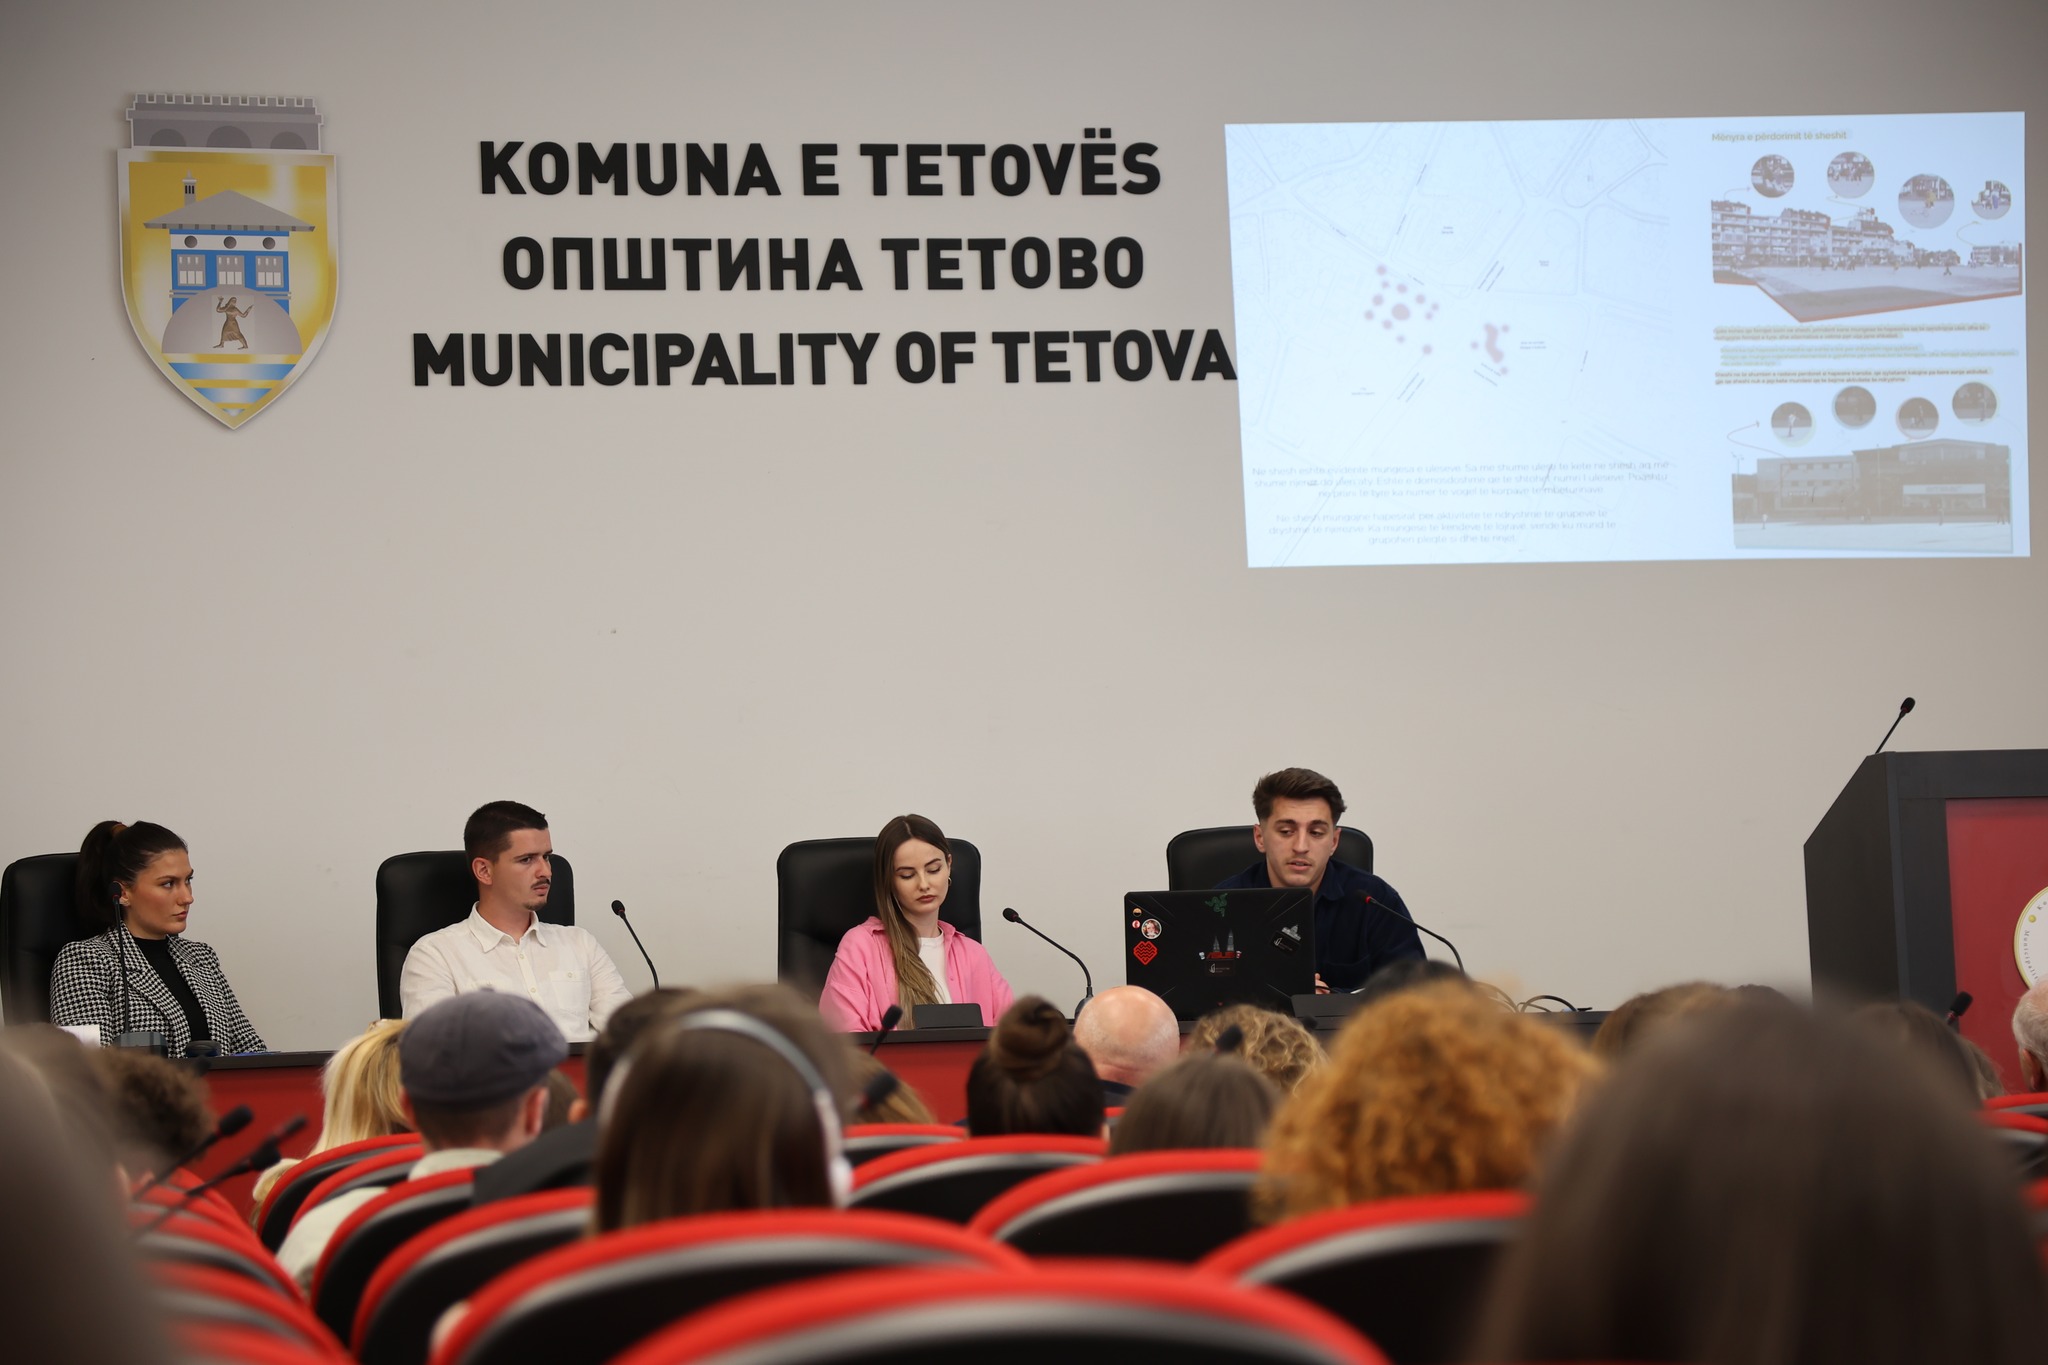 Studentët prezantuan projektet për sheshin e Tetovës. Foto: Komuna e Tetovës